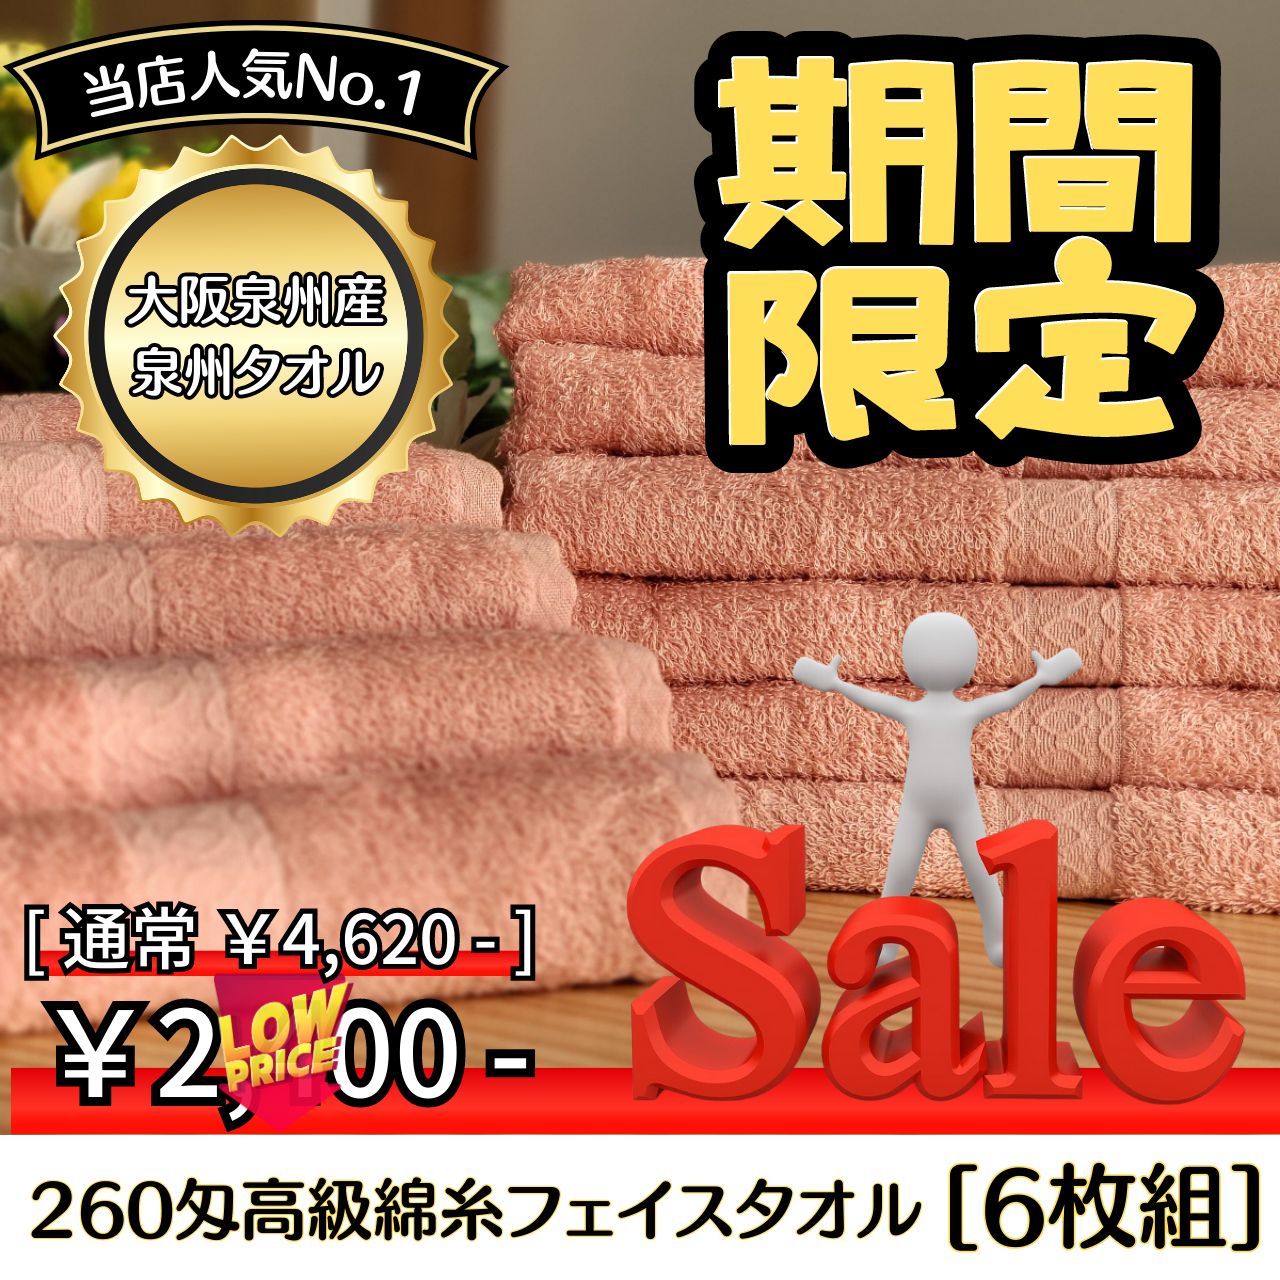 泉州タオル 高級綿糸ピンクフェイスタオルセット6枚組 タオル新品 まとめ売り